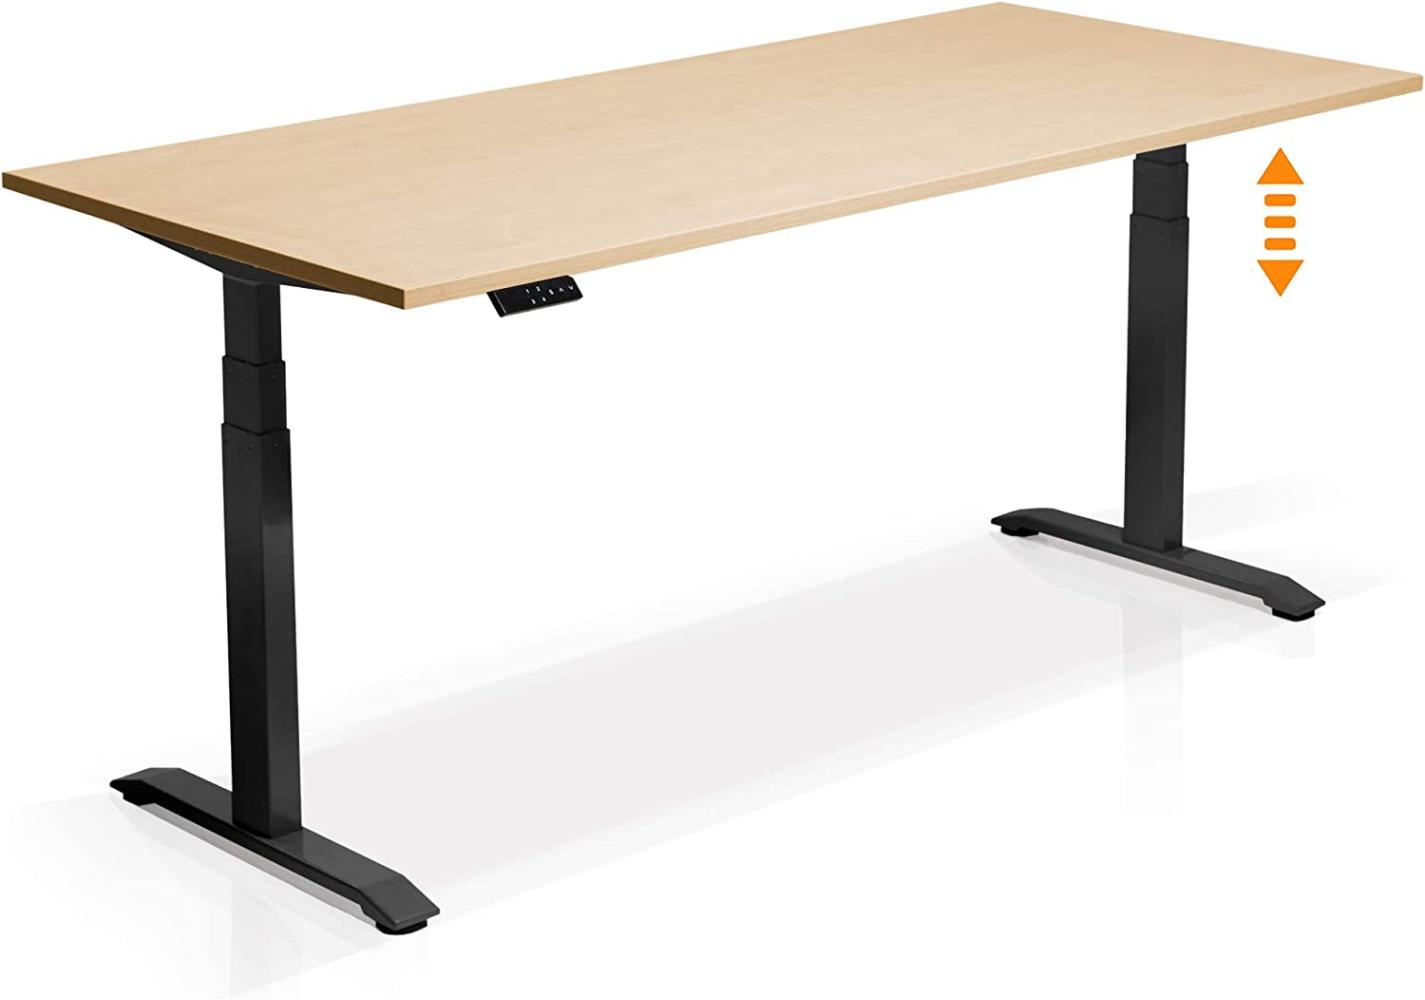 Möbel-Eins OFFICE ONE elektrisch höhenverstellbarer Schreibtisch / Stehtisch, Material Dekorspanplatte schwarz 160x80 cm ahornfarbig Bild 1